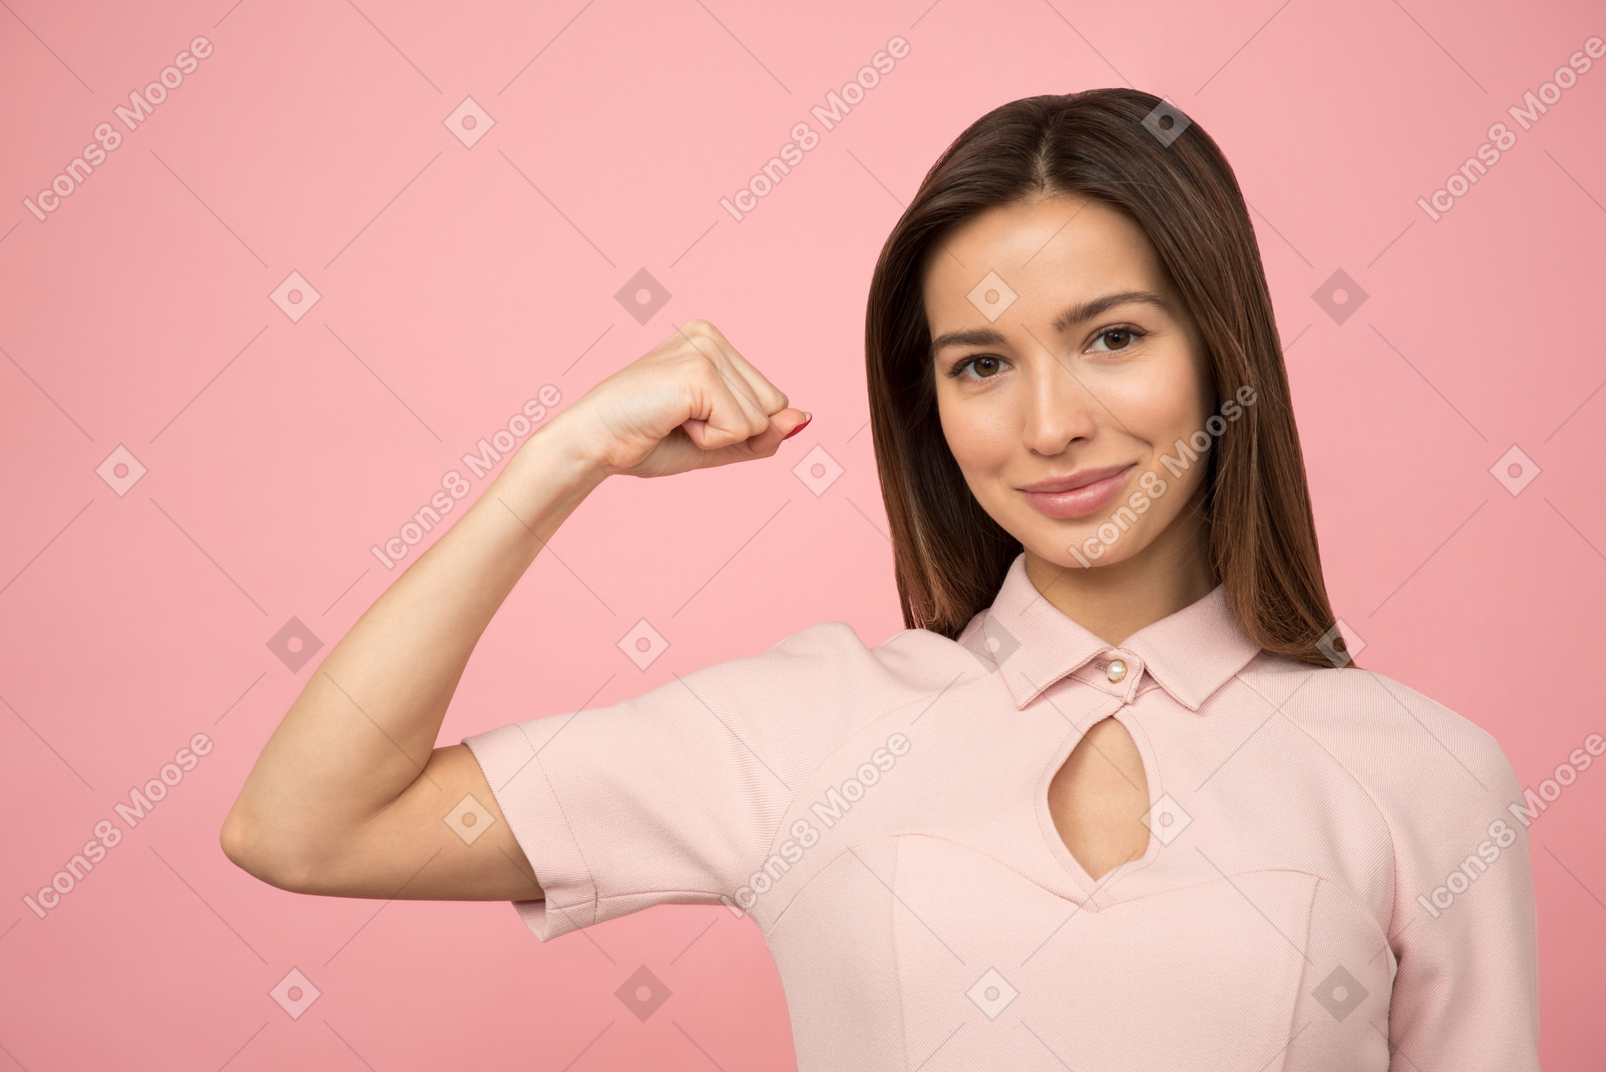 Garota mostrando seu bíceps